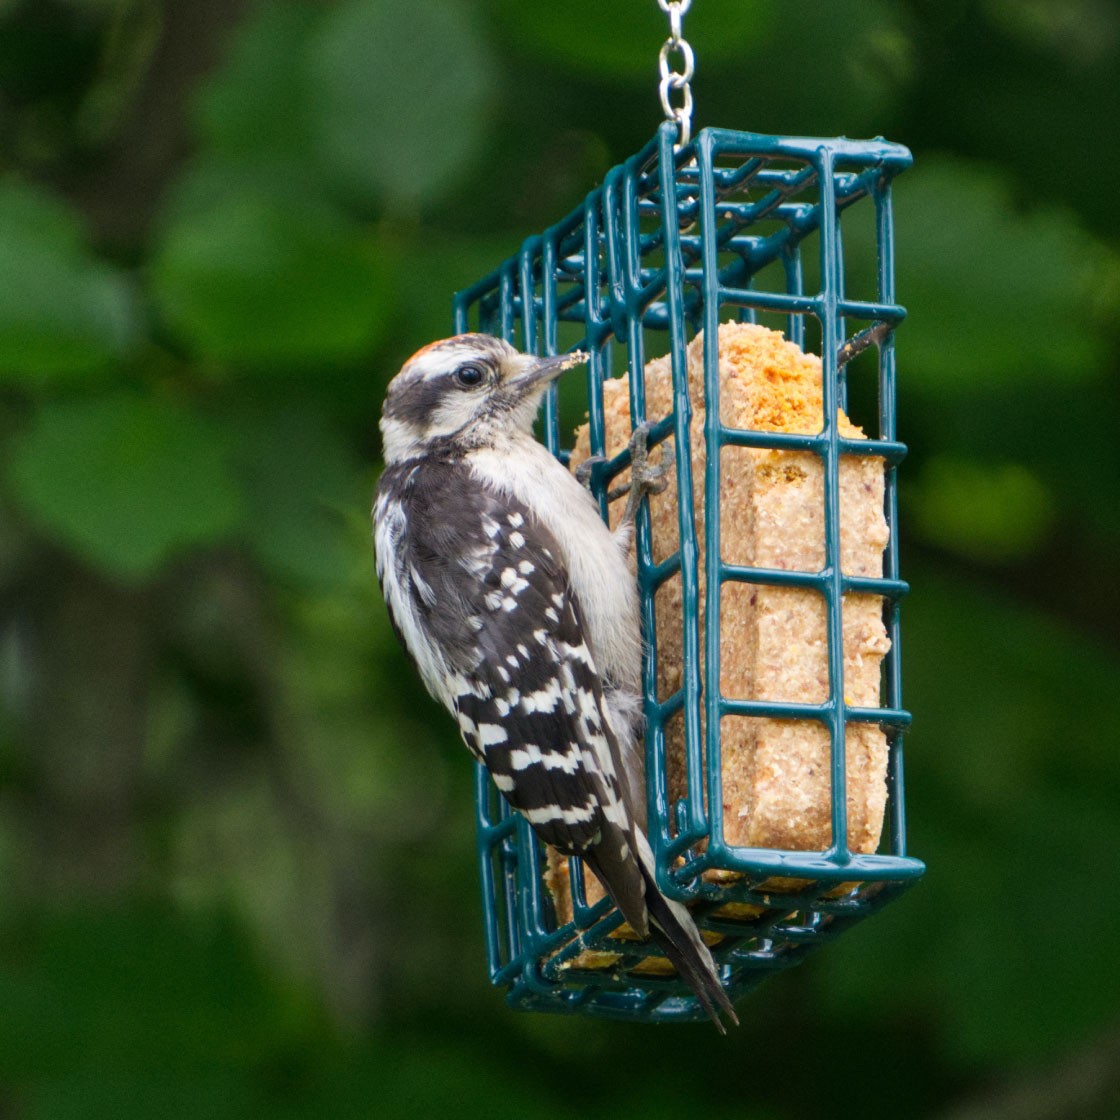 A small bird eats at an outdoor bird feeder